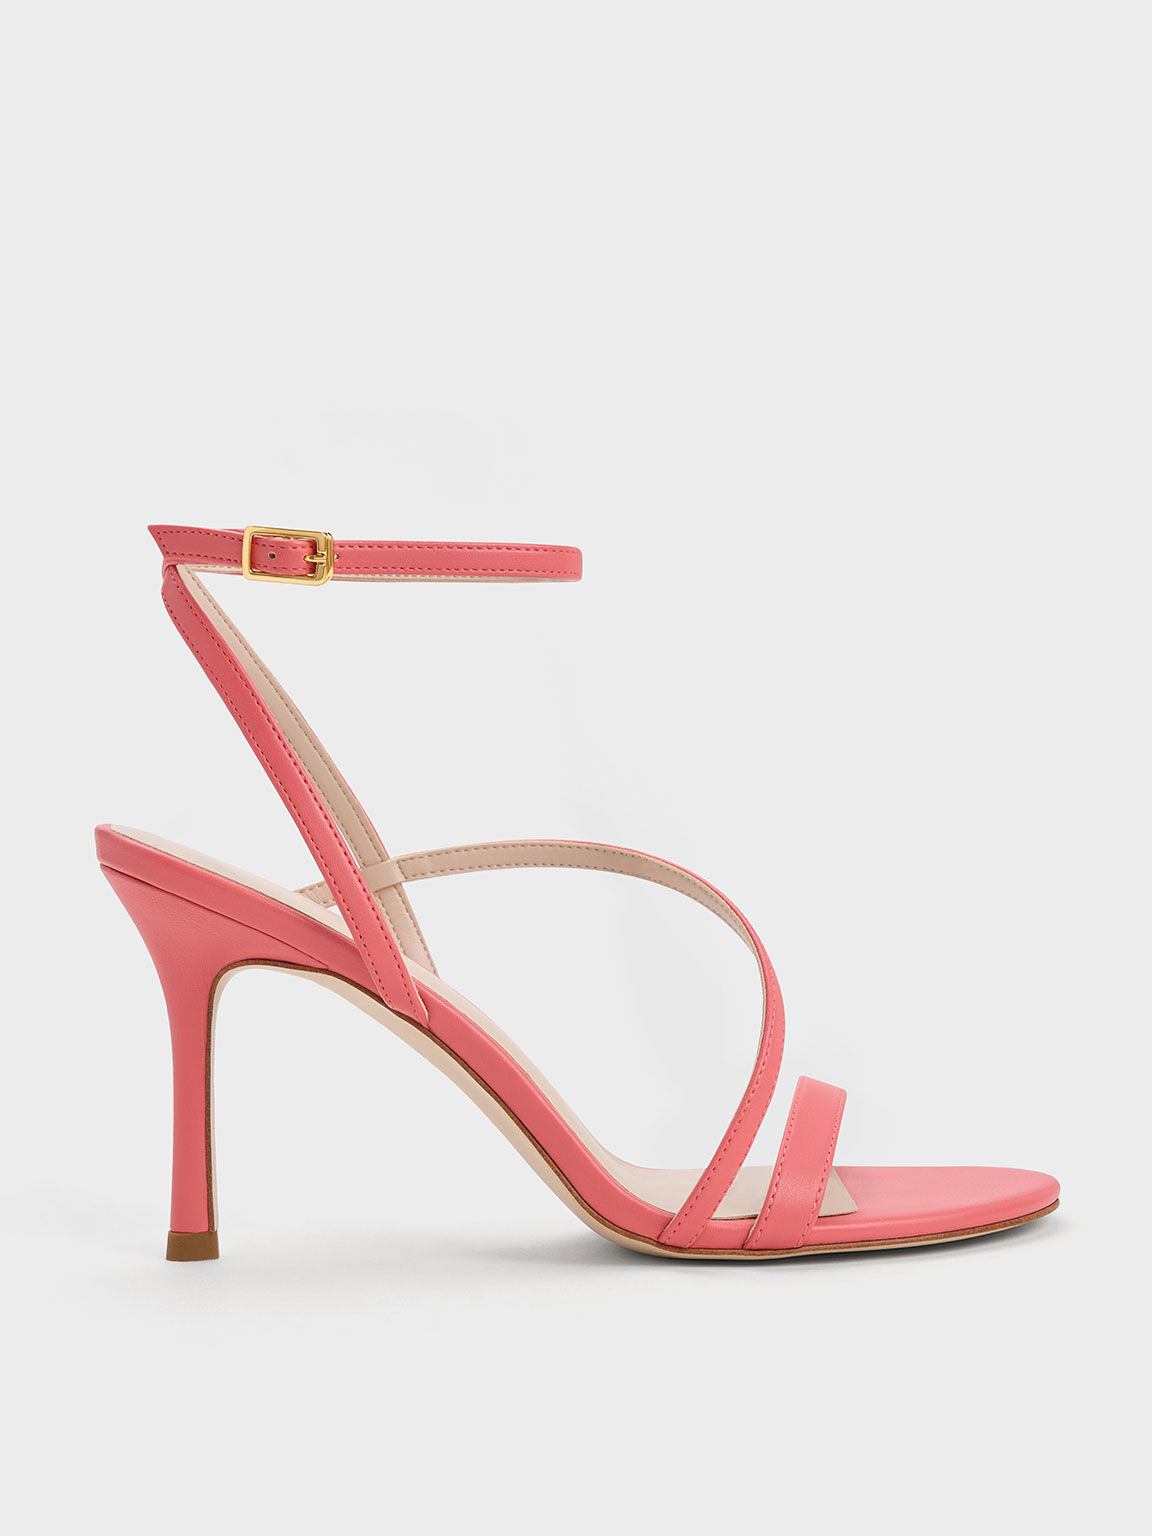 Zara High Heeled Vinyl Sandals | Heels, High heels, High heel sandals